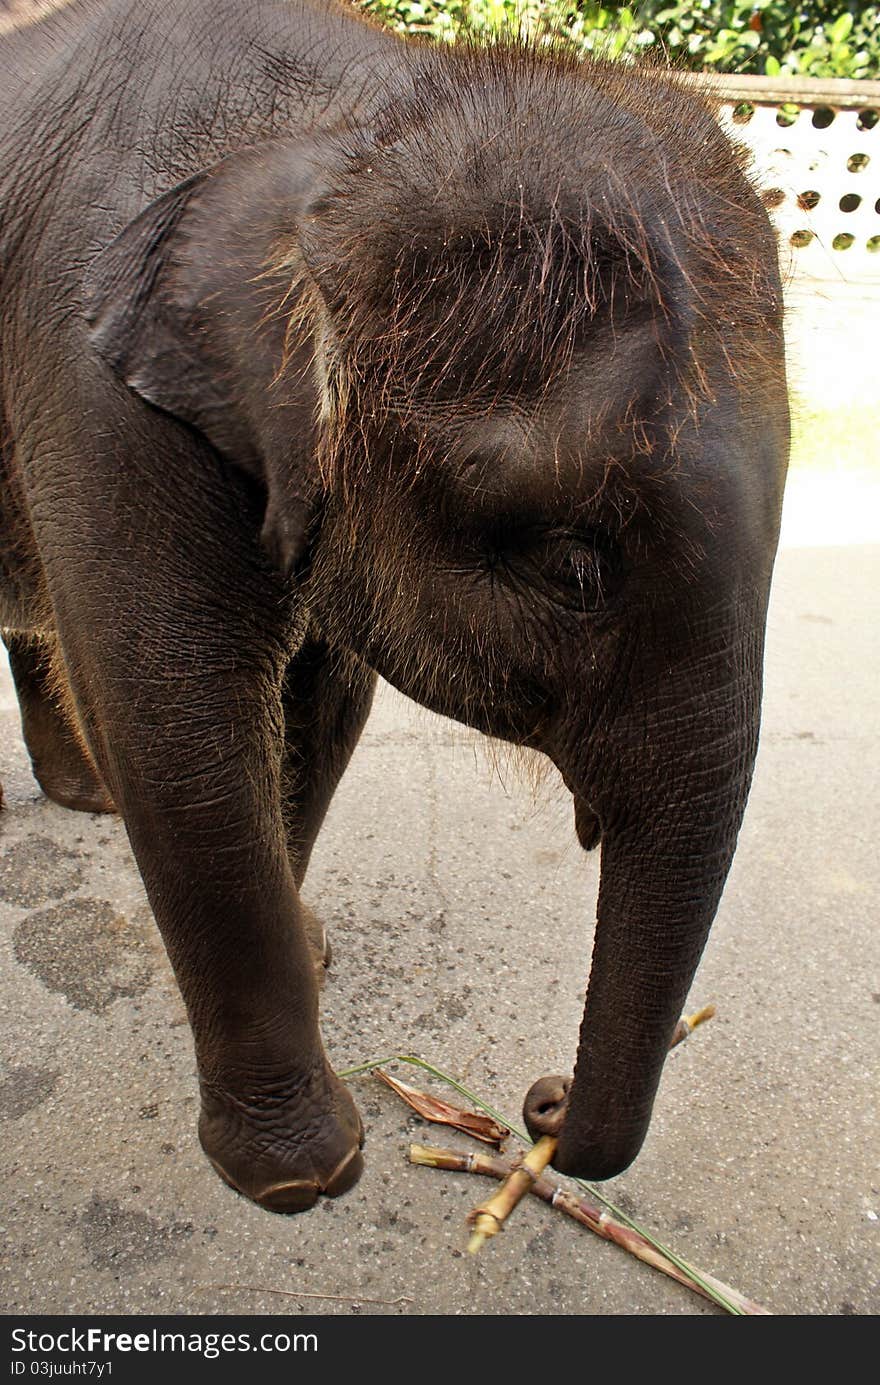 Cute baby elephant eating sugarcane